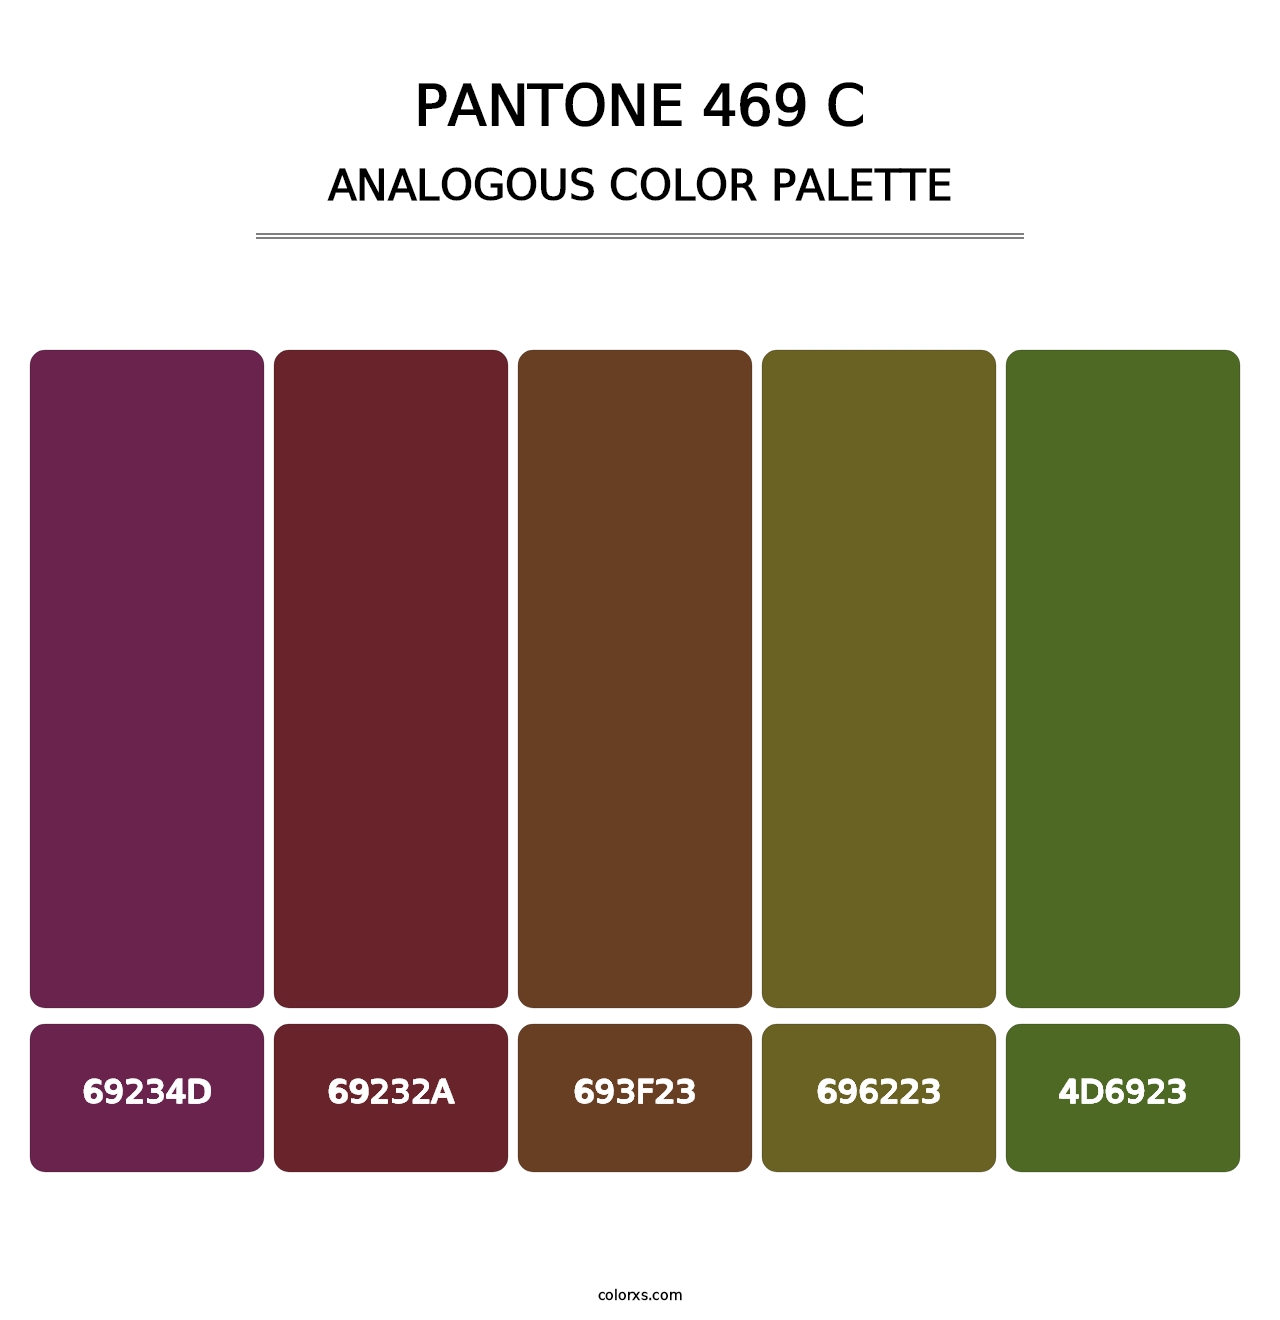 PANTONE 469 C - Analogous Color Palette